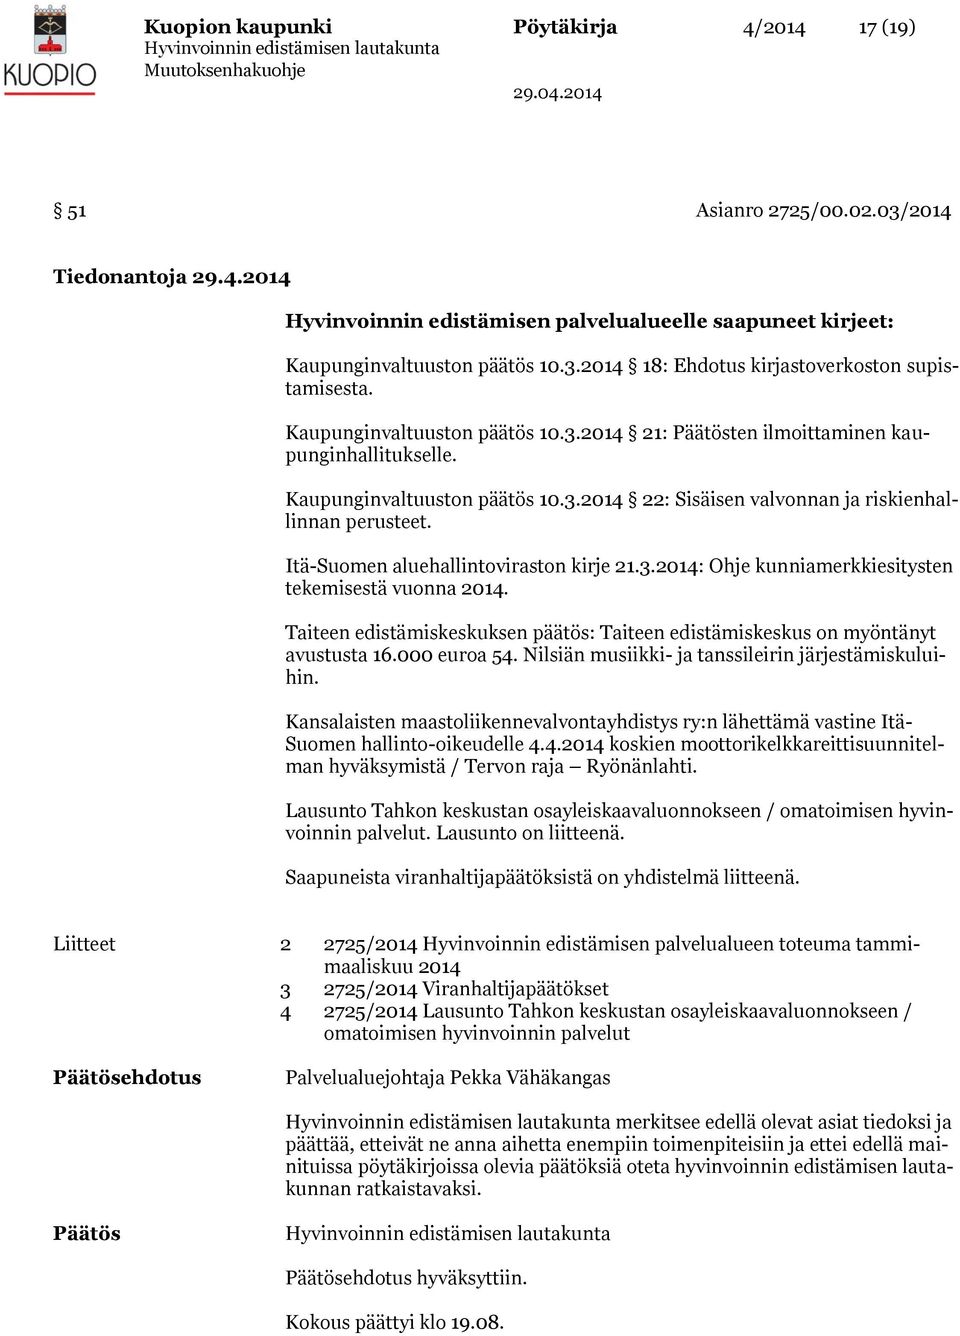 Itä-Suomen aluehallintoviraston kirje 21.3.2014: Ohje kunniamerkkiesitysten tekemisestä vuonna 2014. Taiteen edistämiskeskuksen päätös: Taiteen edistämiskeskus on myöntänyt avustusta 16.000 euroa 54.